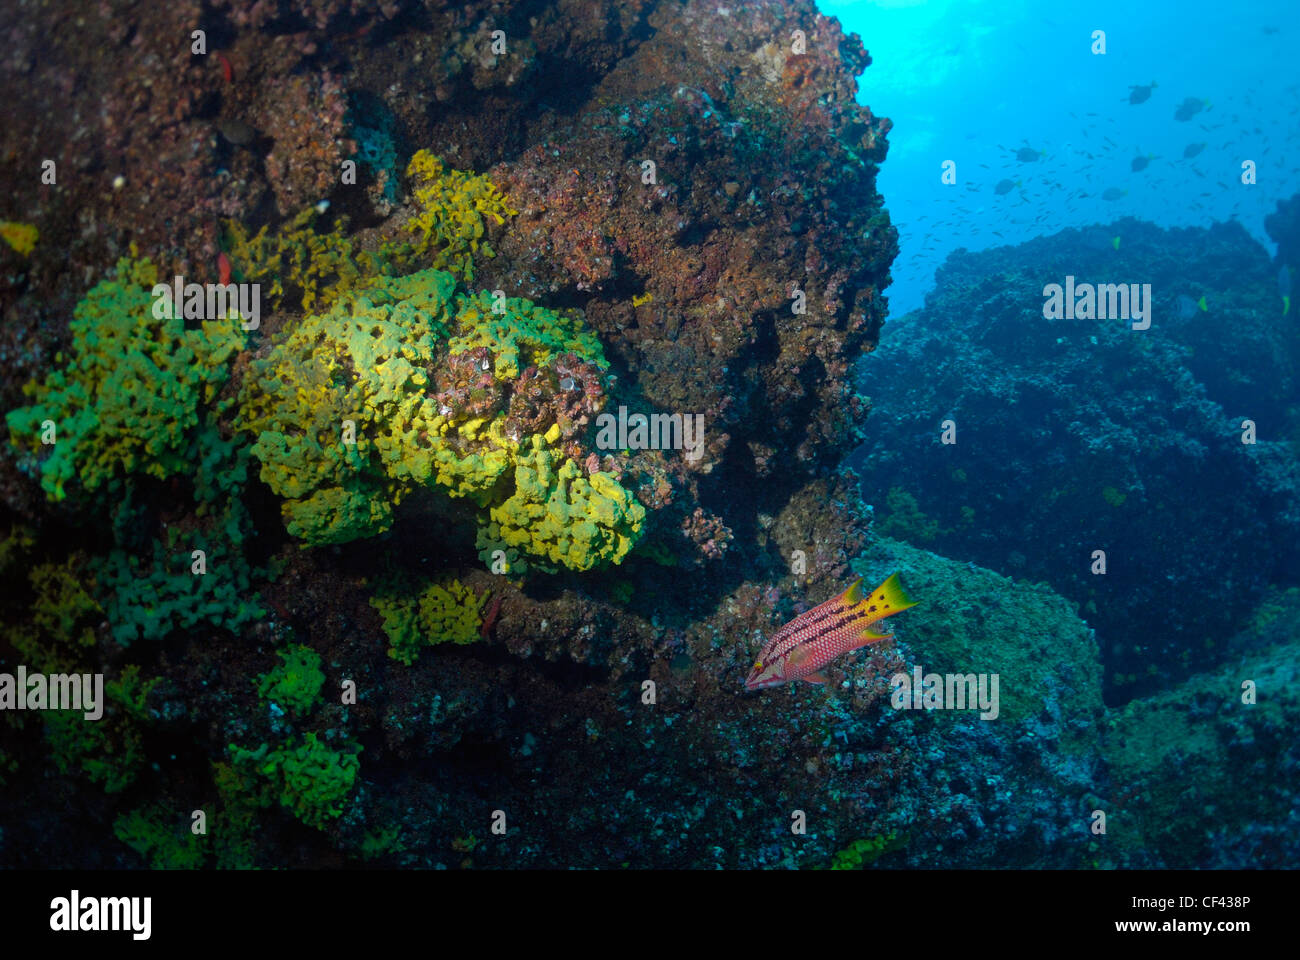 Arrecifes de Coral y la vida marina en la formación rocosa, Wolf Island, Islas Galápagos, Ecuador Foto de stock